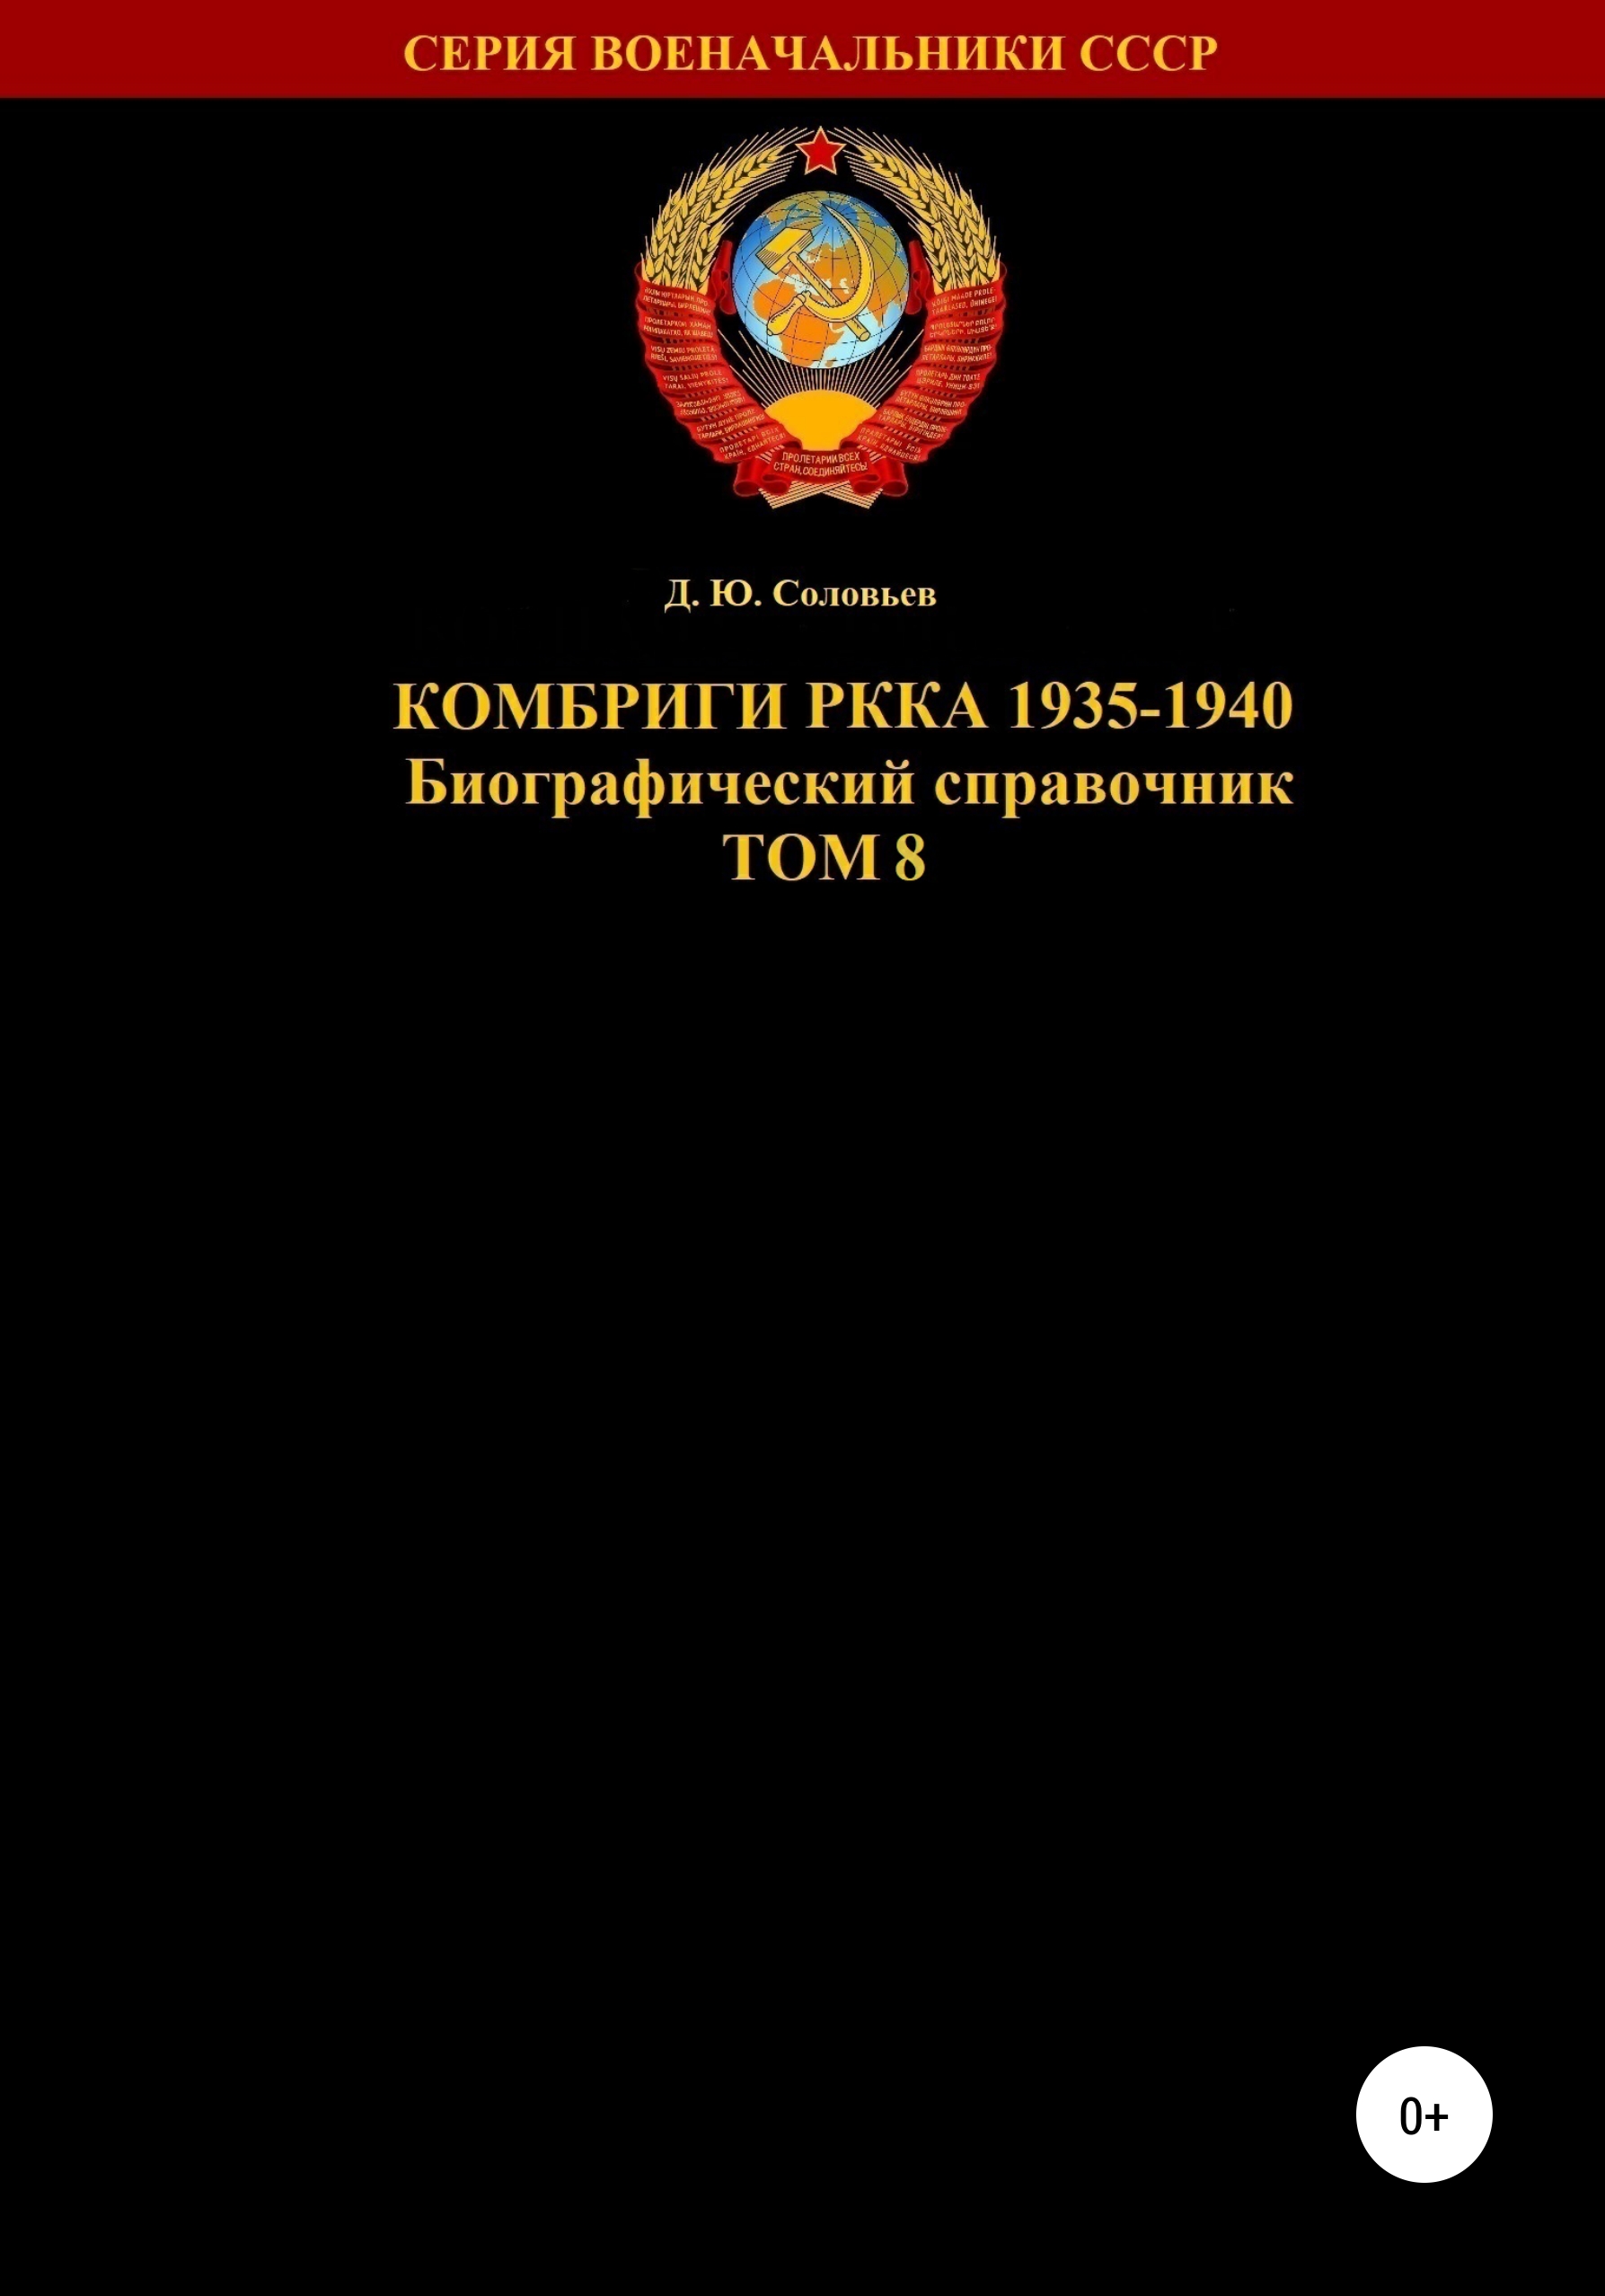 Комбриги РККА 1935-1940 гг. Том 8